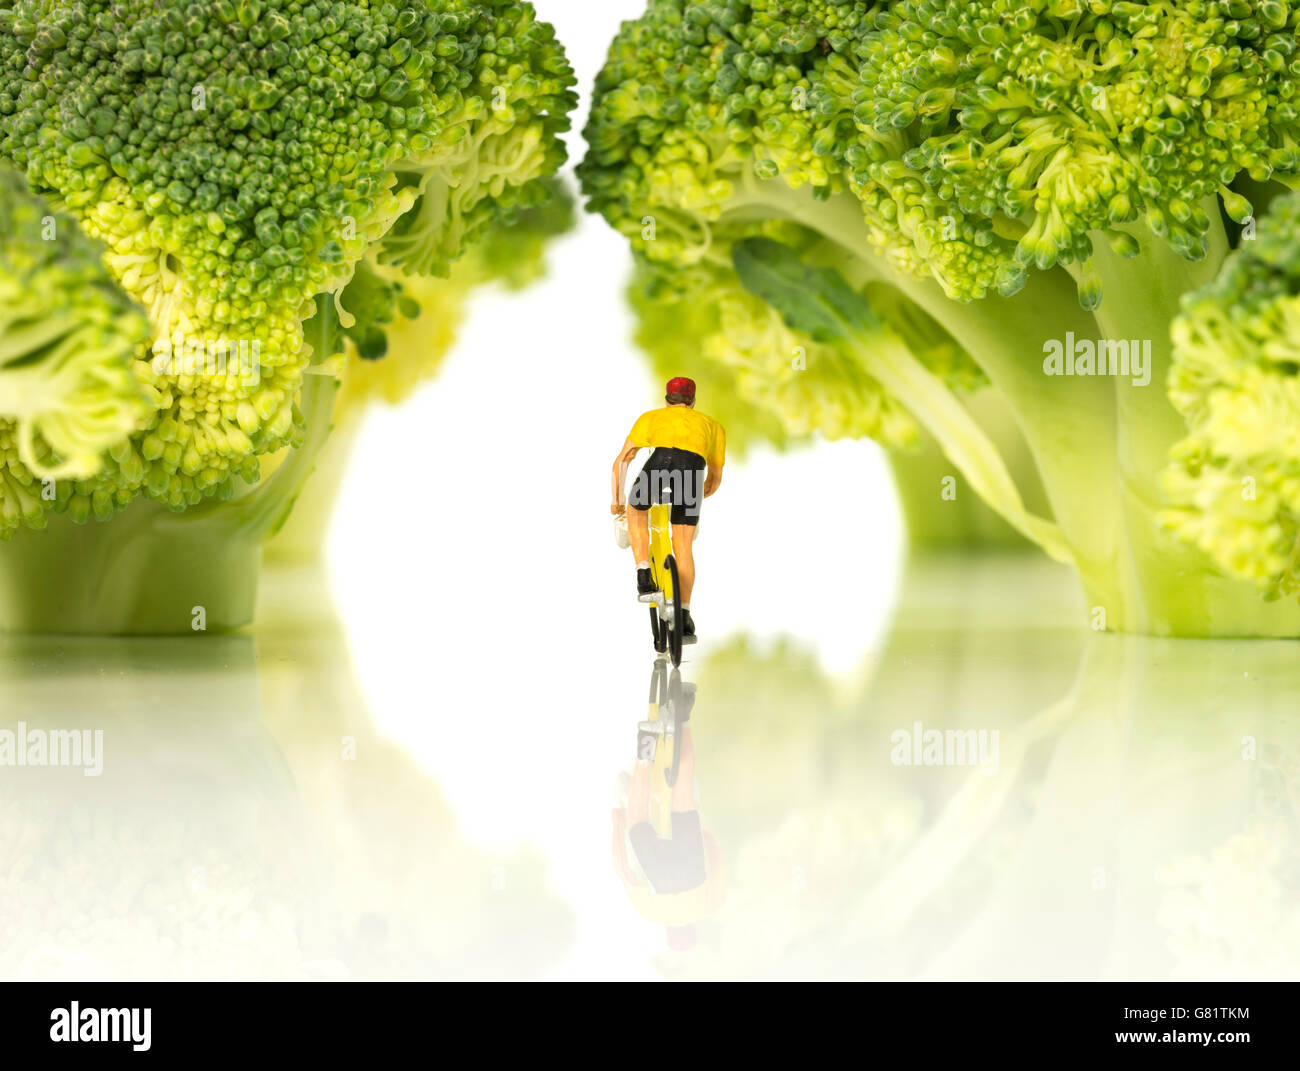 Miniatur Figur Mann mit Fahrrad im gelben Trikot auf tour de France im grünen Wald Stockfoto